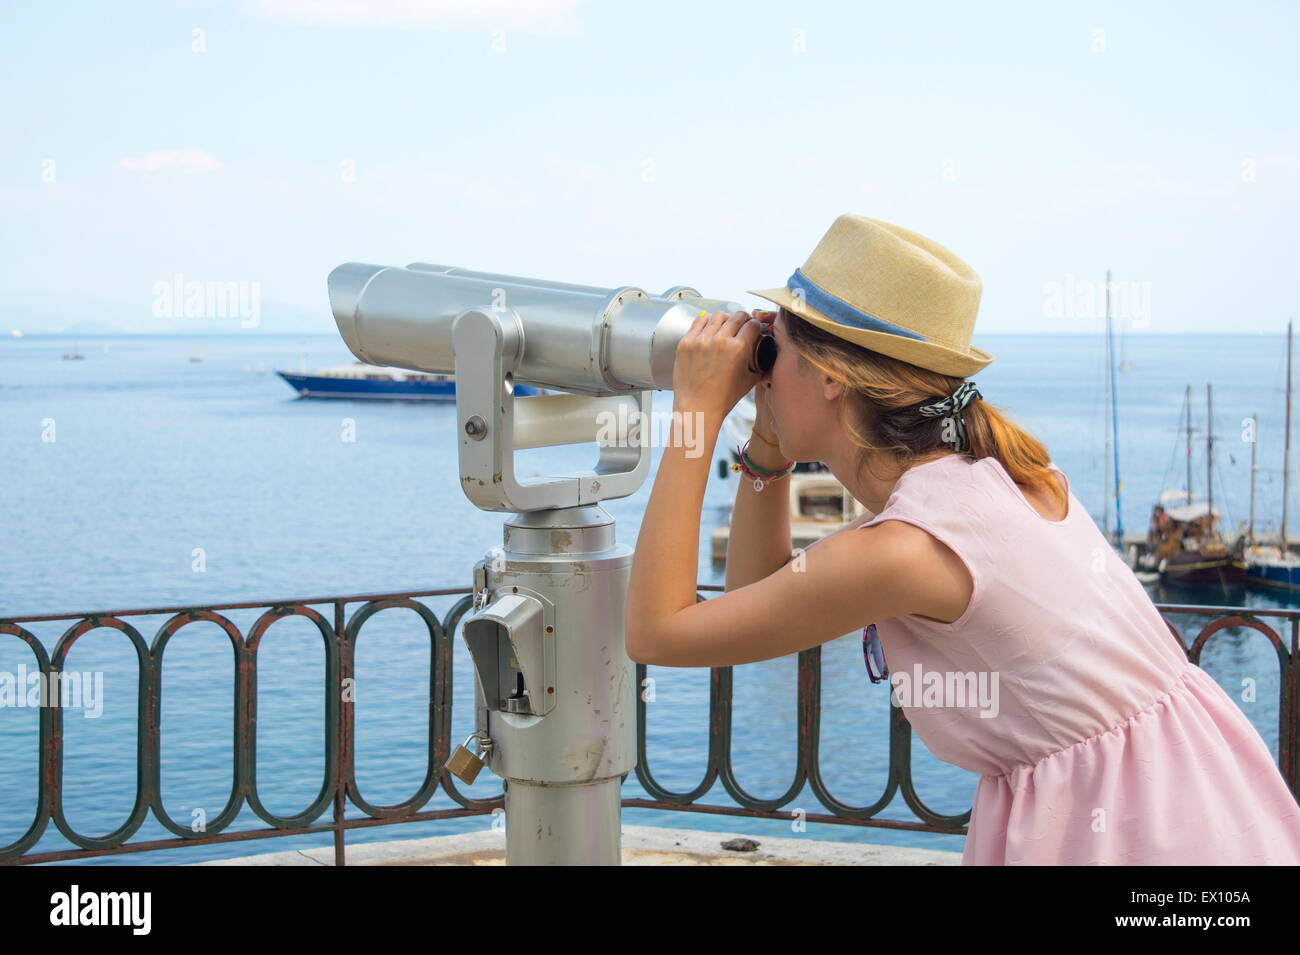 Jeune fille à la recherche publique à travers des jumelles à la mer portant chapeau de paille et robe rose Banque D'Images